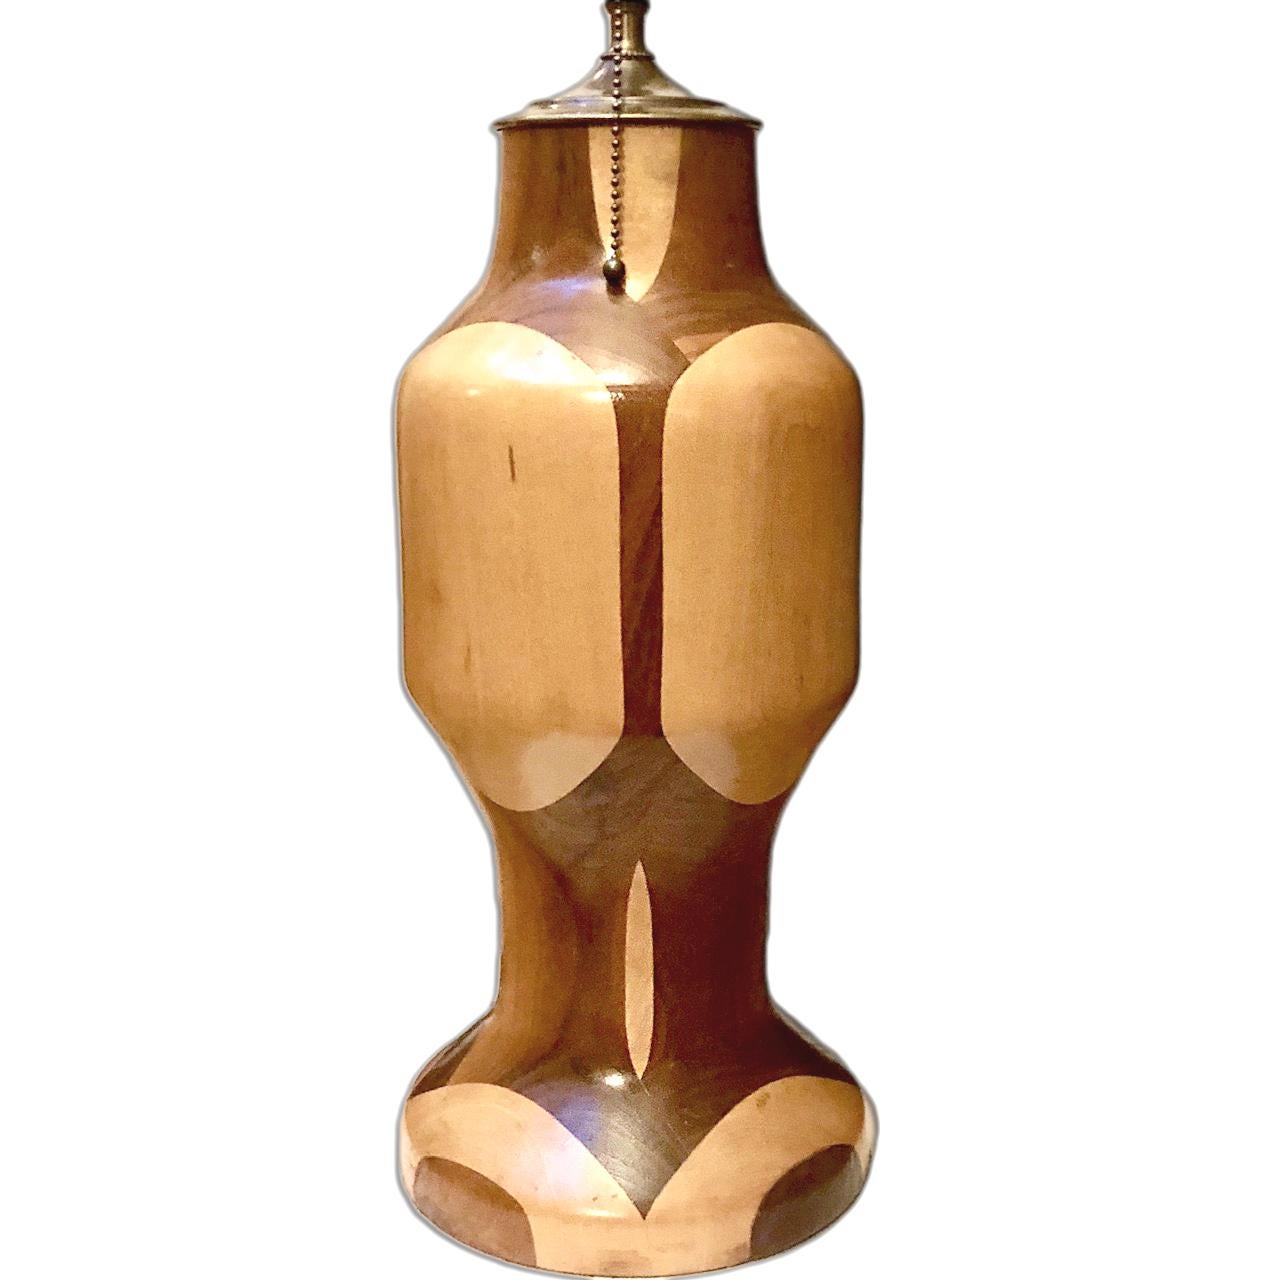 Une seule lampe de table italienne en bois tourné bicolore datant des années 1950.

Mesures :
Hauteur du corps : 17
Diamètre : 7